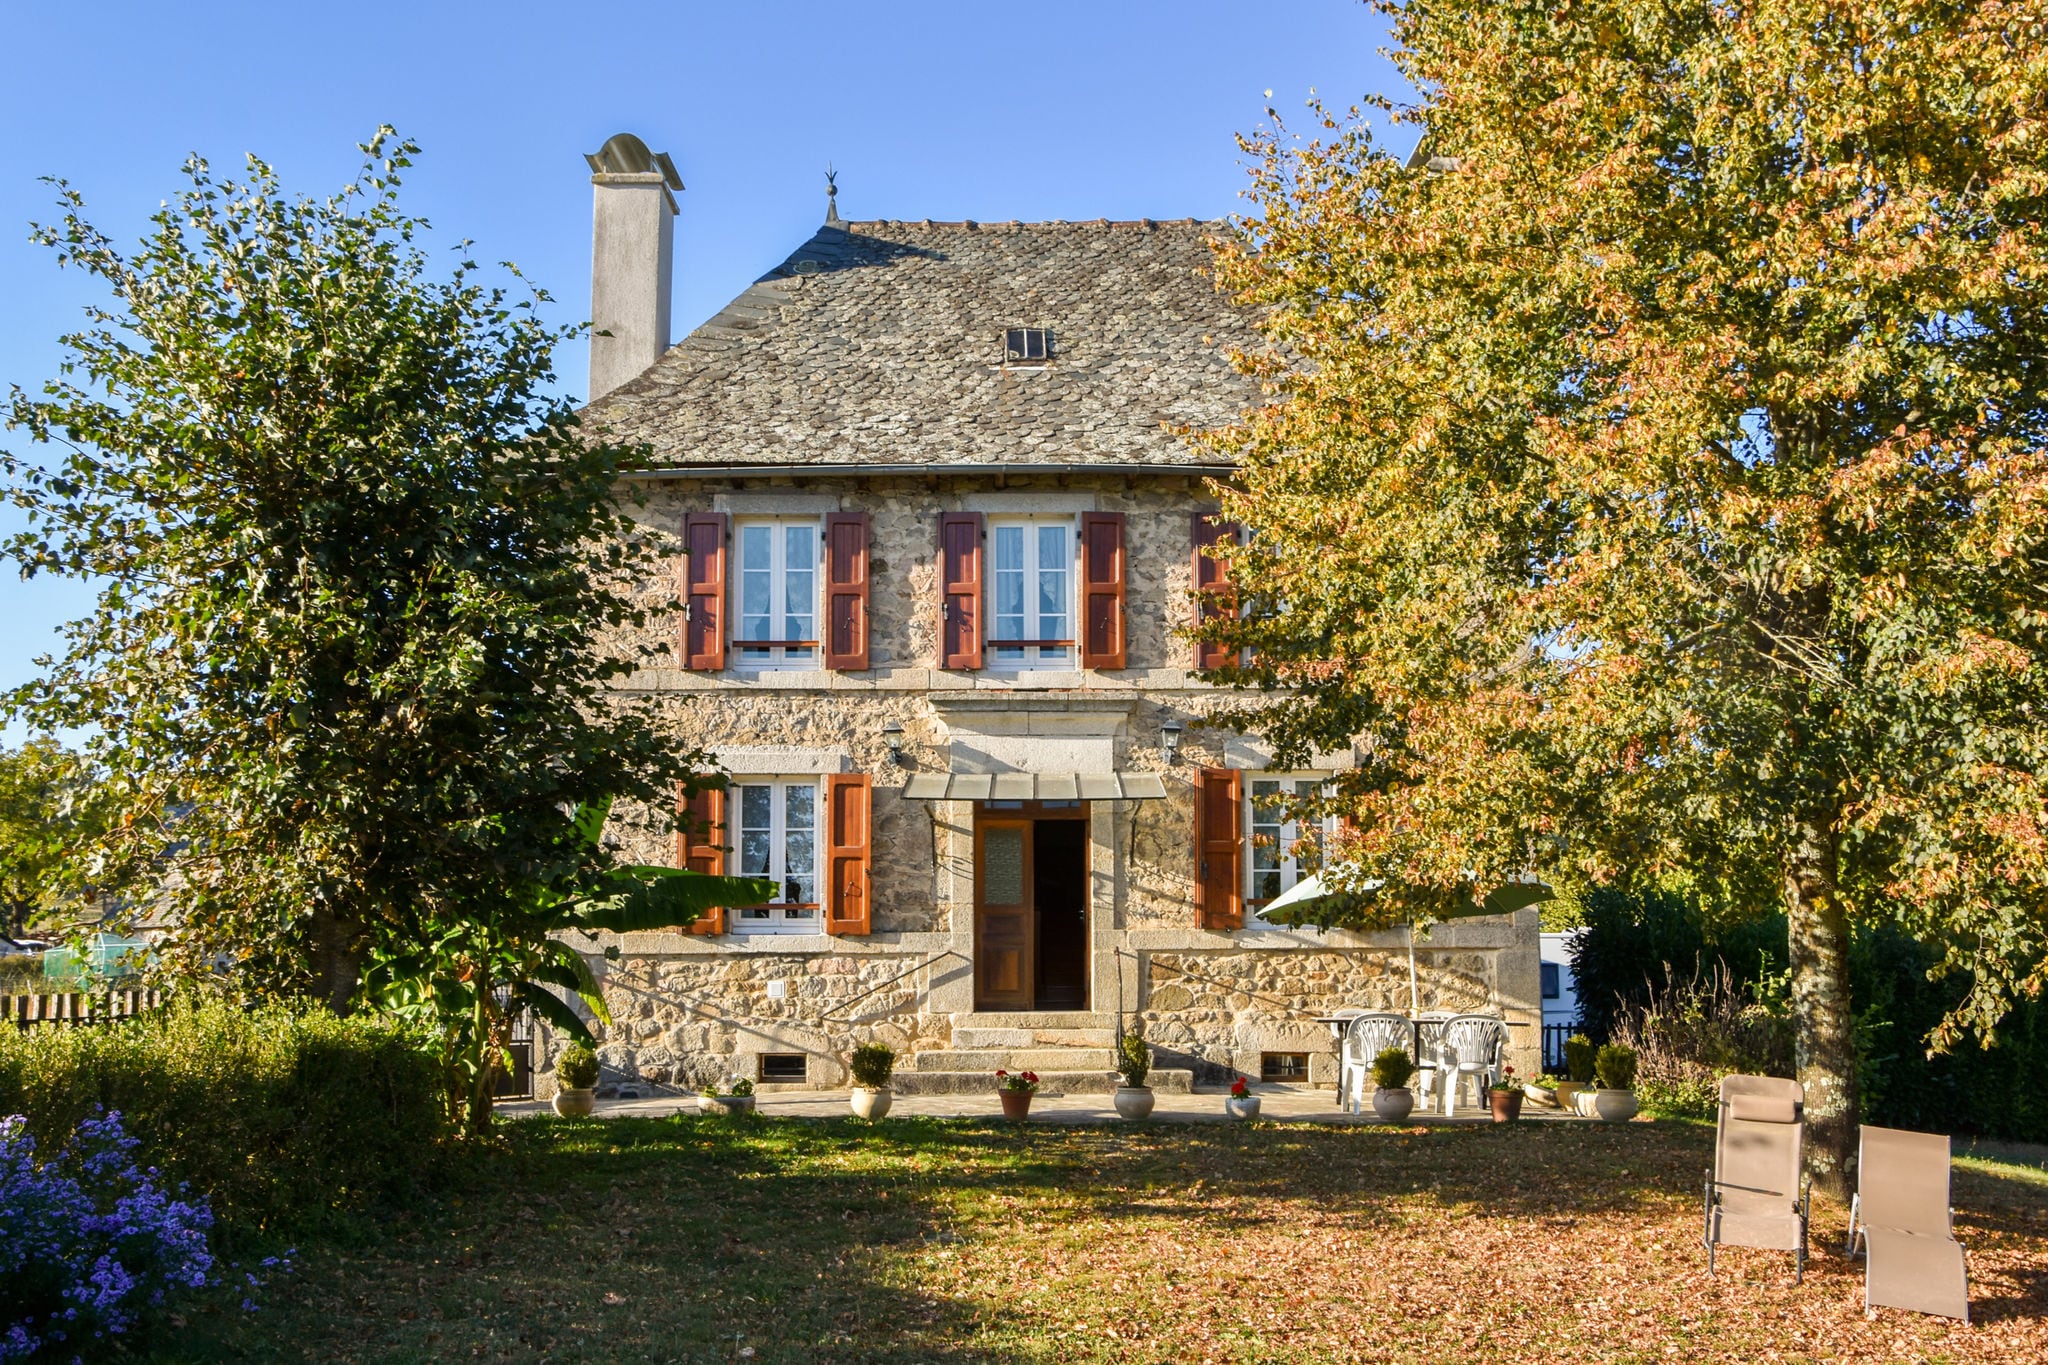 Landelijk vakantiehuis voor rust, natuur en prachtig uitzicht in Zuid-Frankrijk